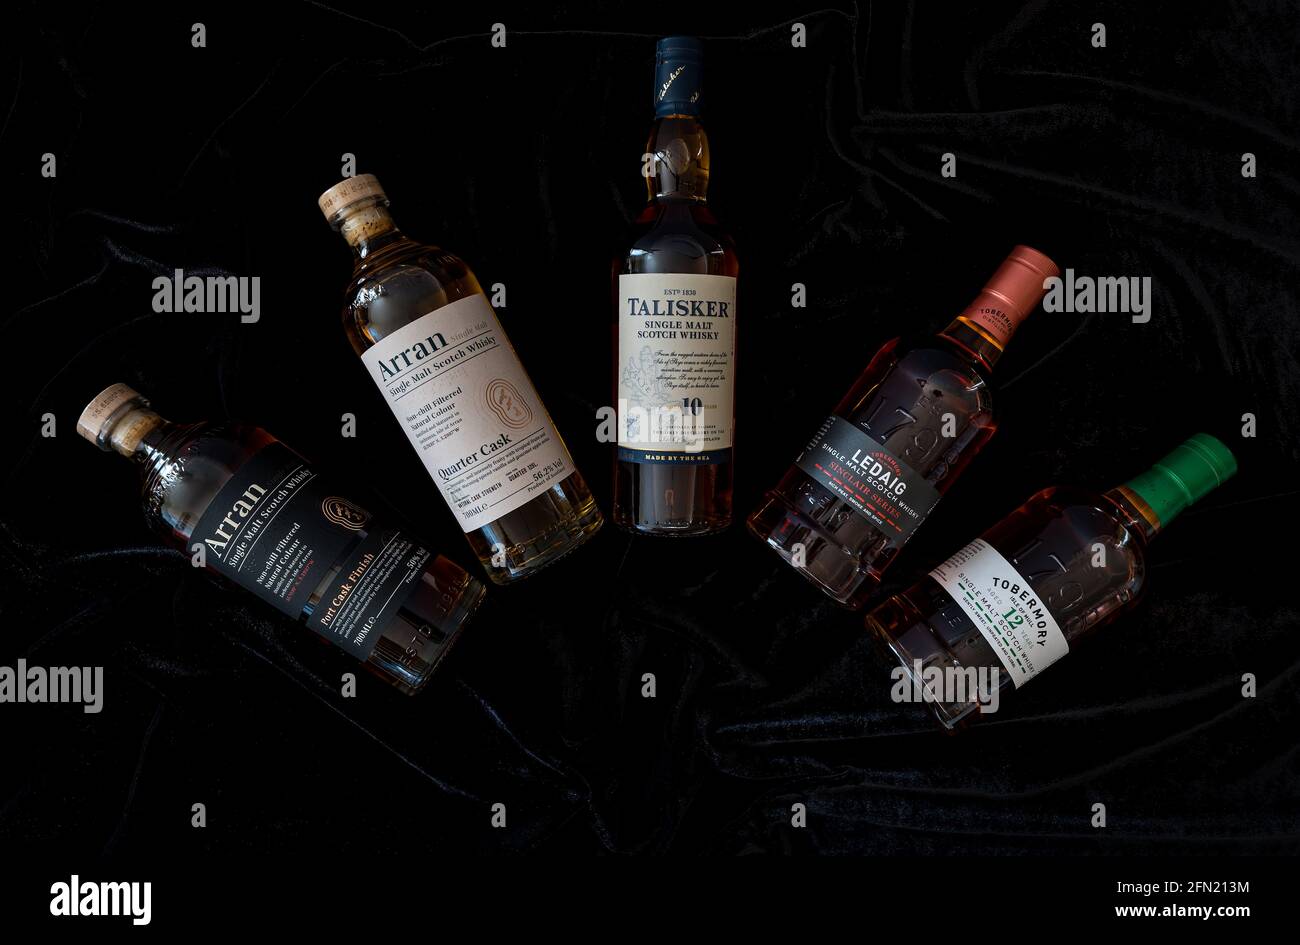 Scottish malt whisky bottles and brands, Scotland, UK: Arran, Talisker malt whisky, Ledaig whisky & Tobermory whisky bottle Stock Photo